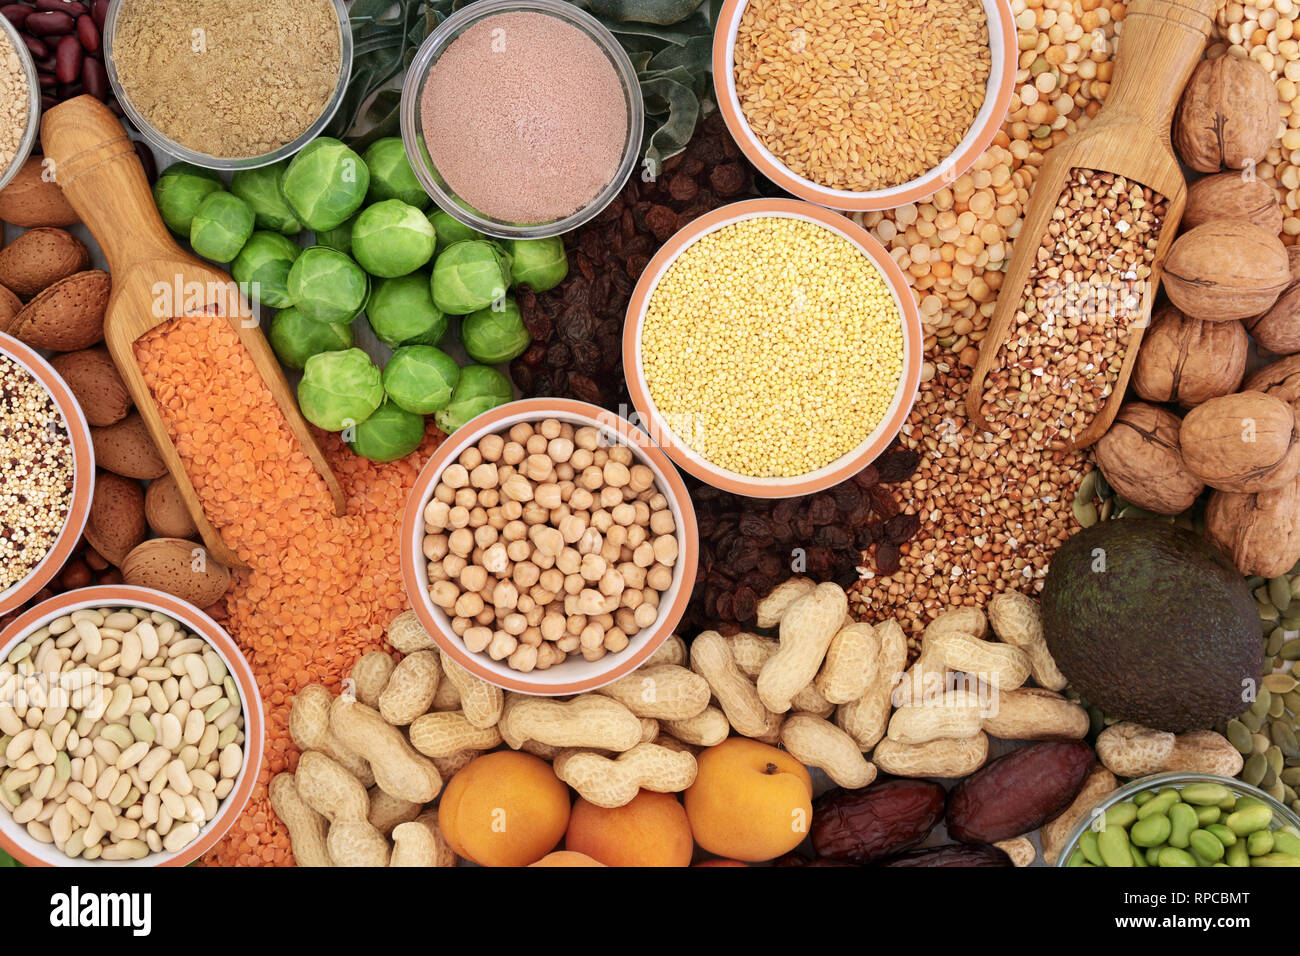 Lebensmittel mit hohem Proteingehalt mit Gemüse, Hülsenfrüchte, Trockenfrüchte, Nüsse, Samen, Körner und Pulver. Stockfoto